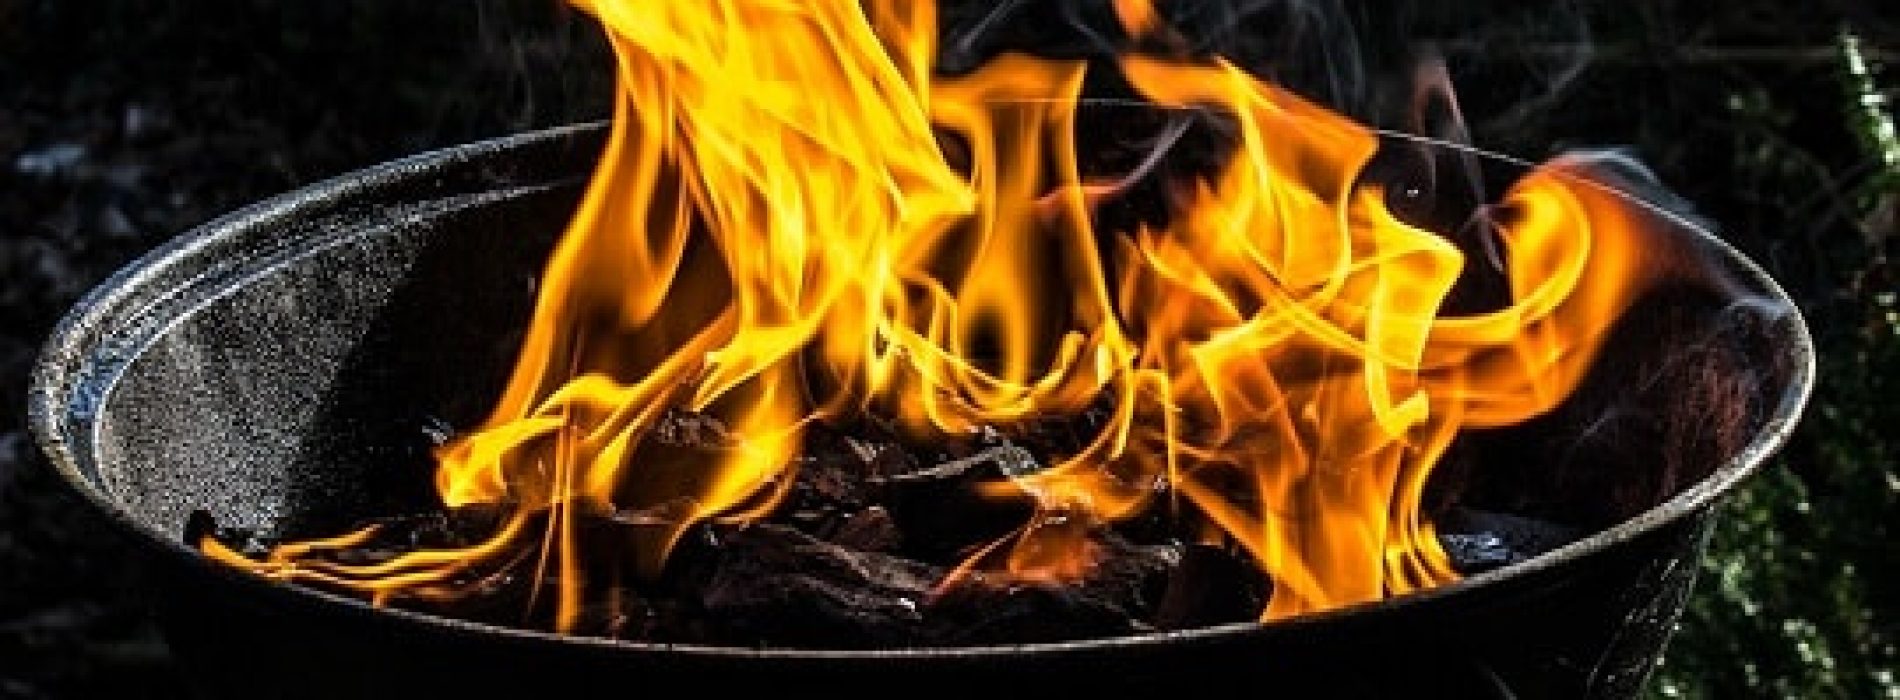 Grilling og brannfare – noen råd og tips